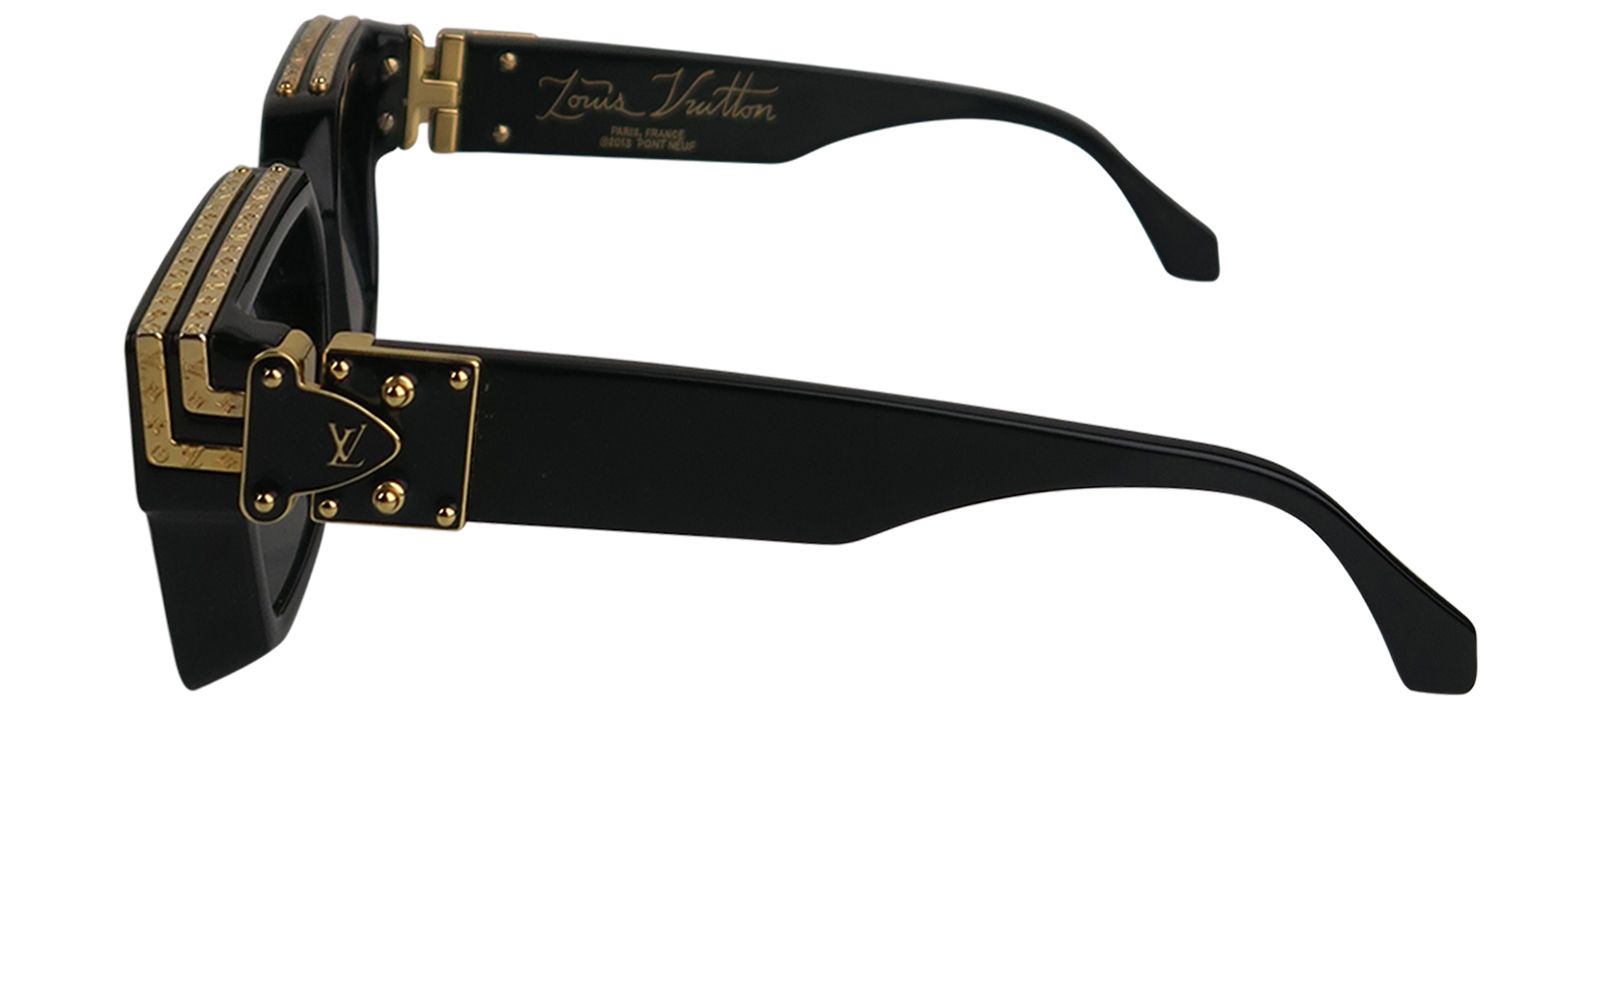 Louis Vuitton Millionaire Sunglasses - 2 For Sale on 1stDibs  lv  millionaire sunglasses, louis vuitton millionaire sunglasses original price,  lv billionaire glasses